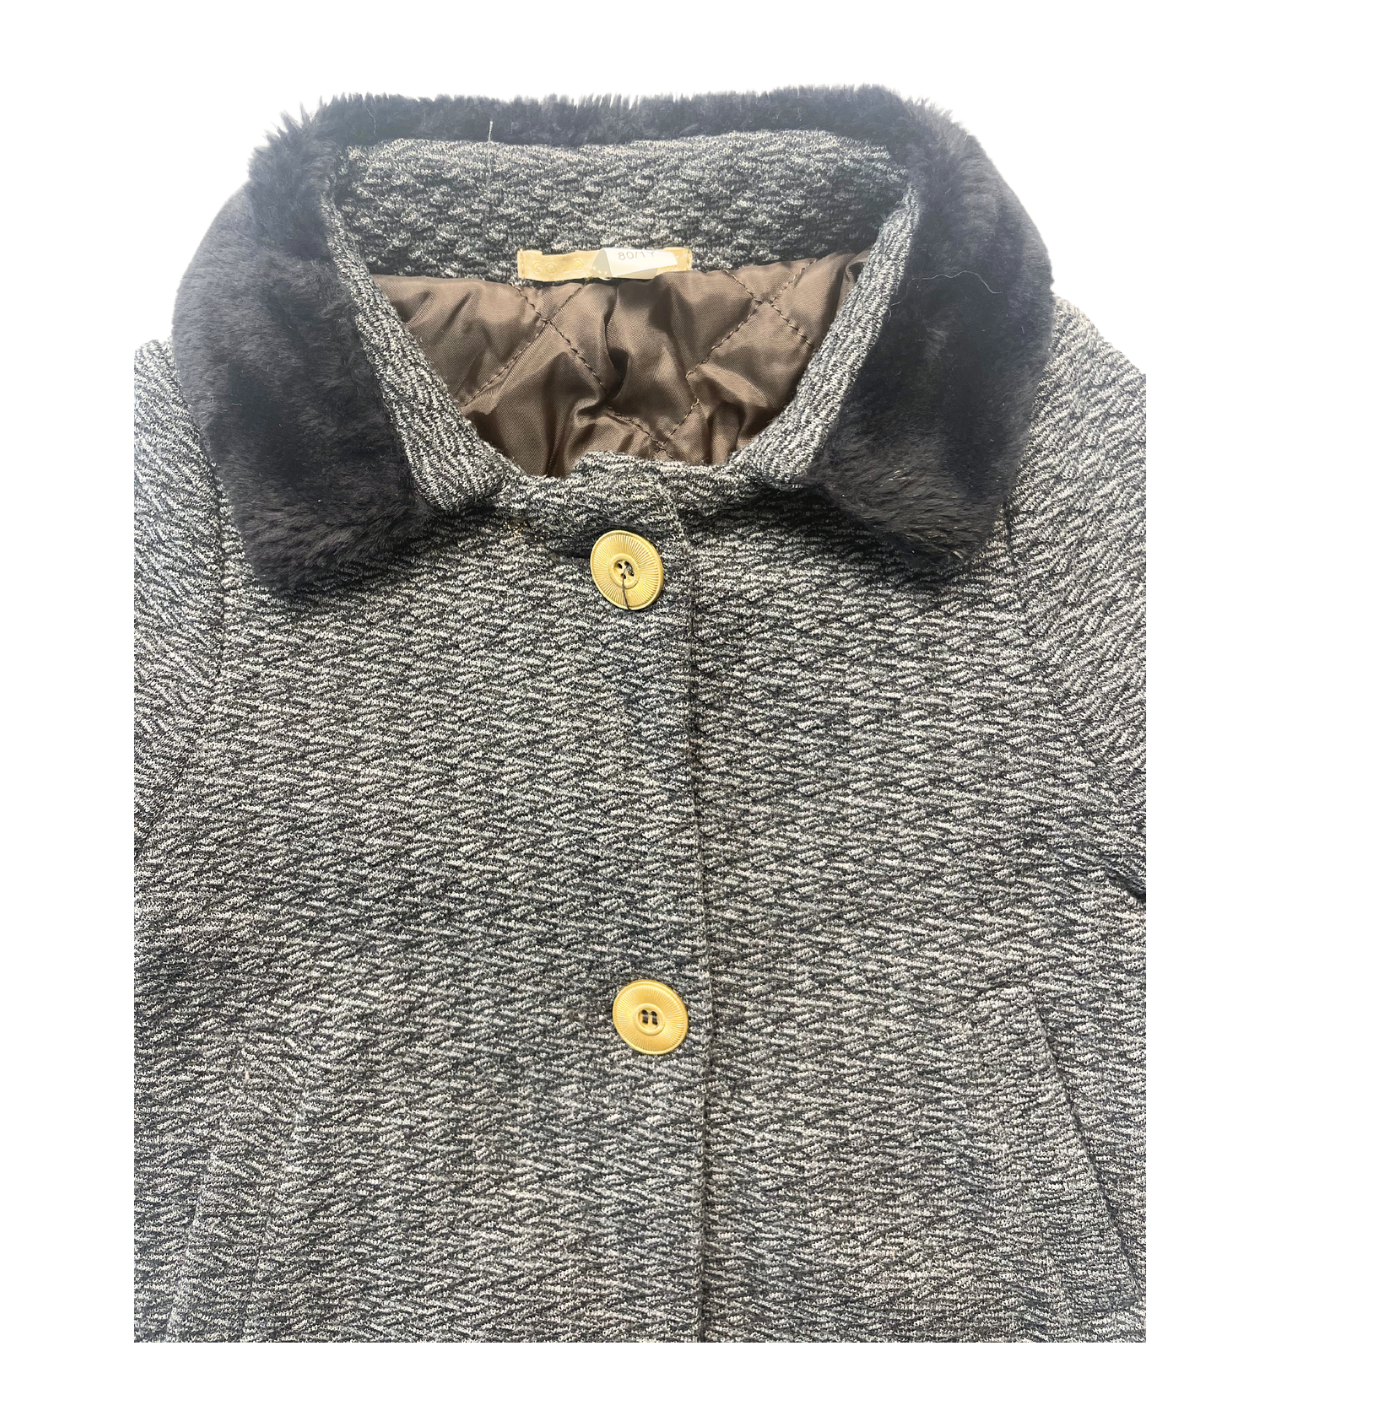 GOLD BELGIUM - Manteau gris col fourrure - 1 ans